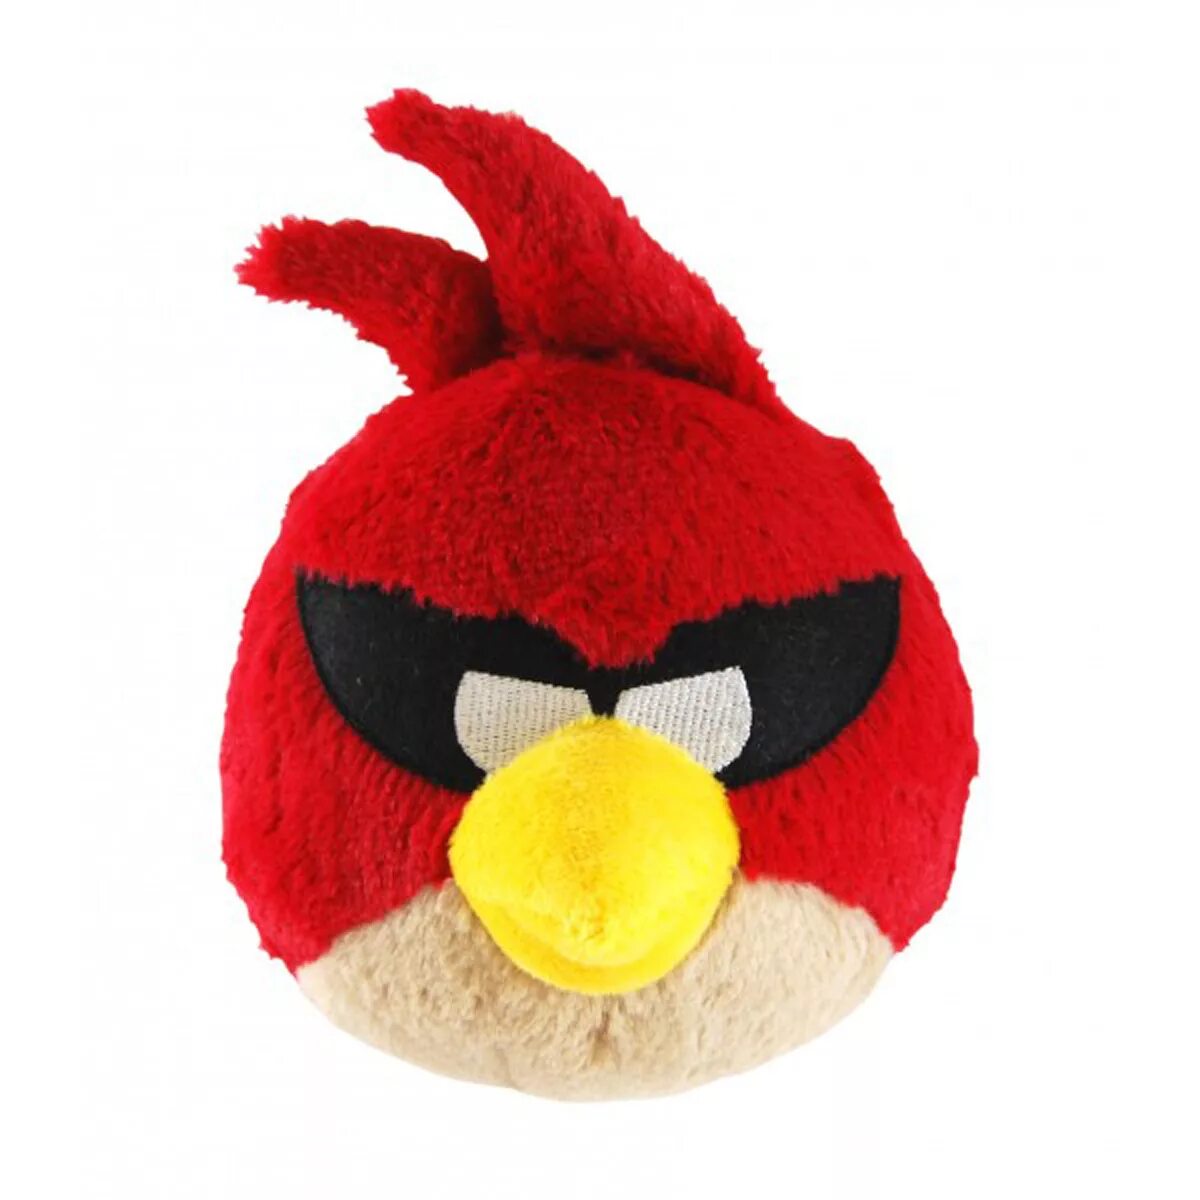 Angry Birds Space Plush Toys. Игрушка Энгри бердз мягкая красная. Angry Birds Space игрушки мягкие. Мягкая игрушка Angry Birds Space - красная птица (звук), 40 см.